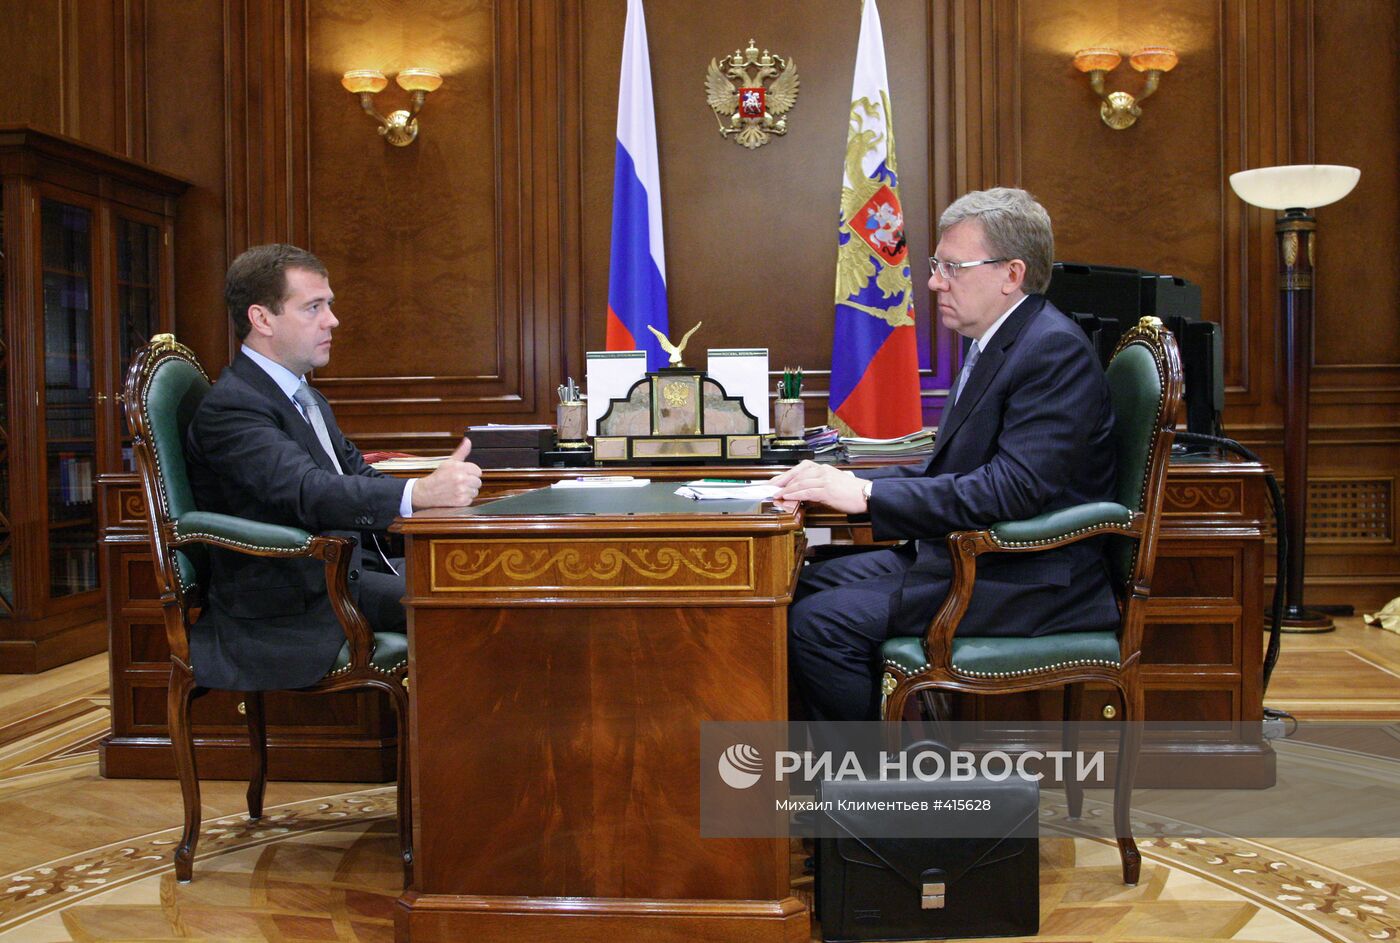 Д.Медведев провел встречу с А.Кудриным